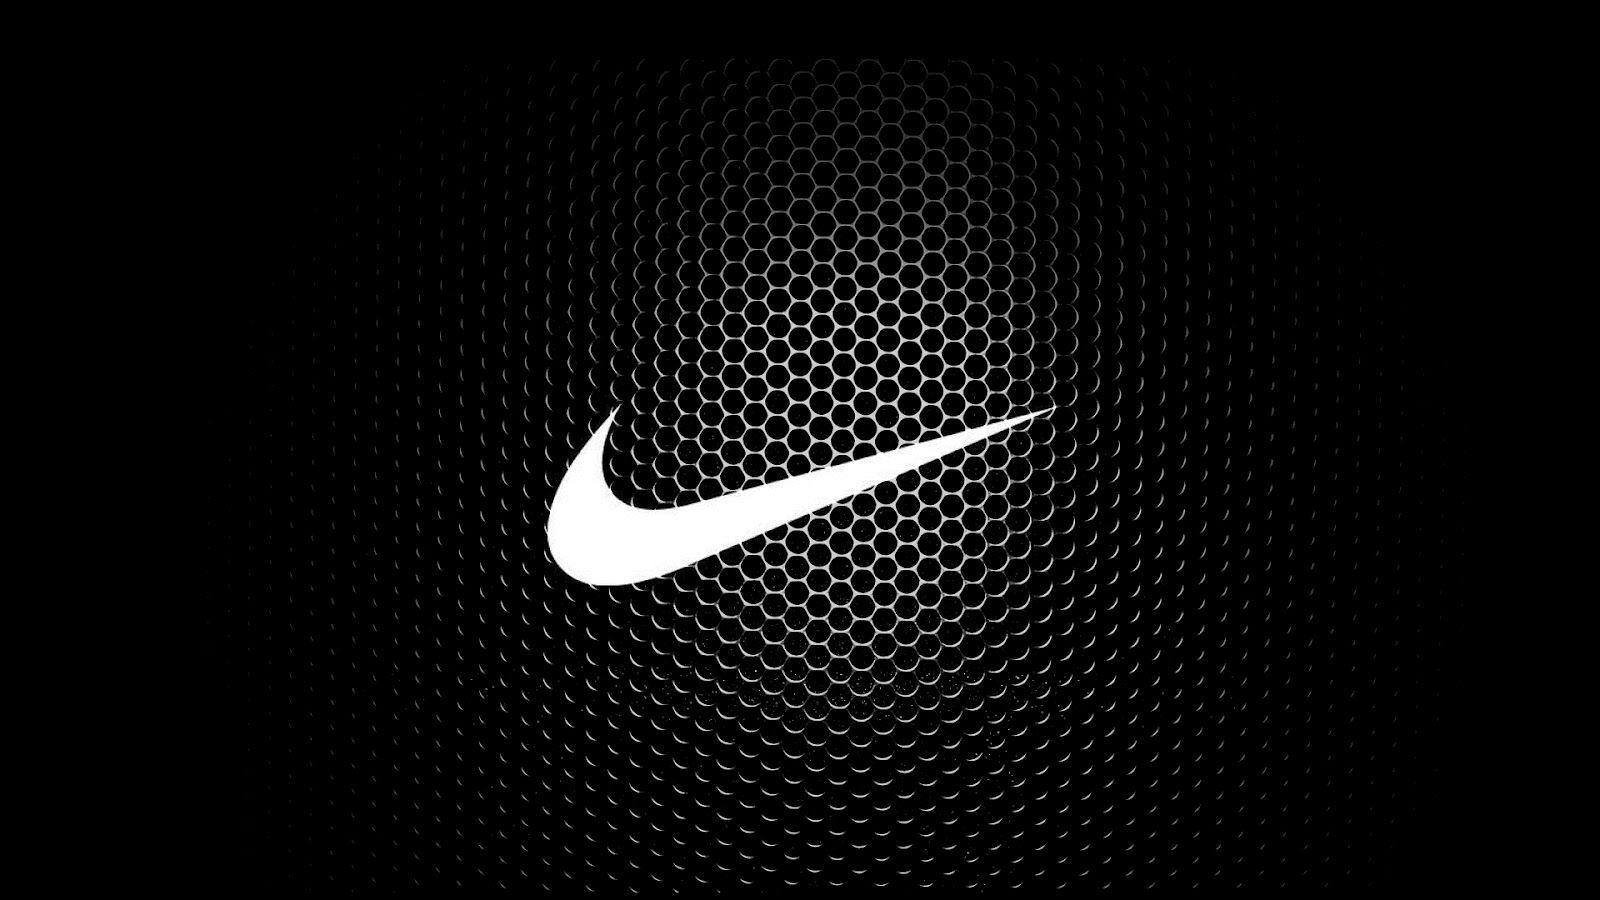 Cool Nike Logos Wallpapers Desktop Background Is 4K Wallpaper> Yodobi